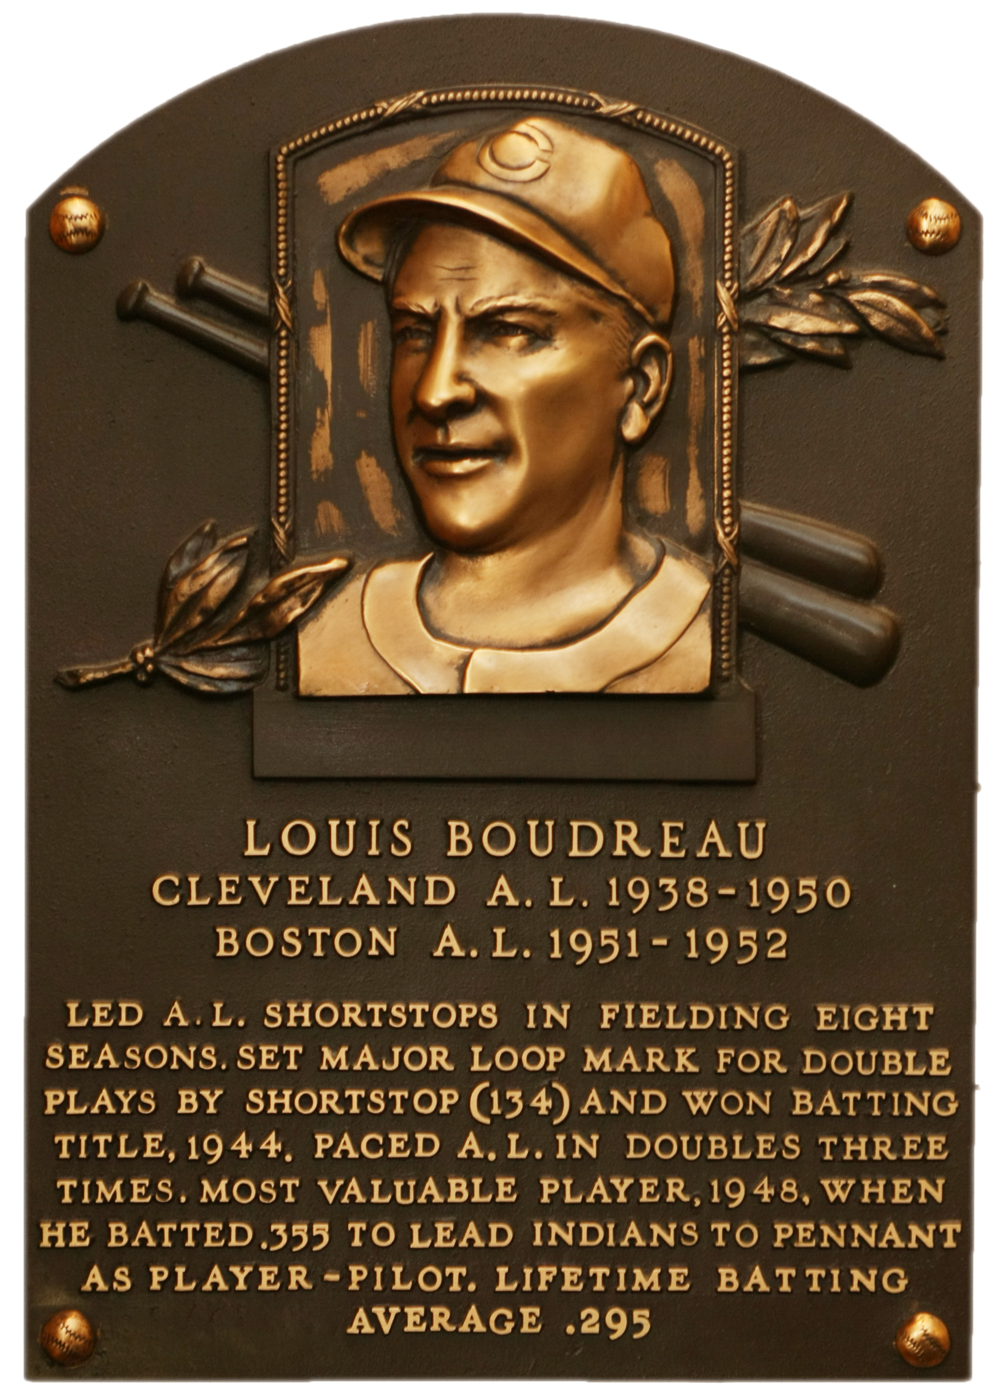 Lou Boudreau Hall of Fame plaque